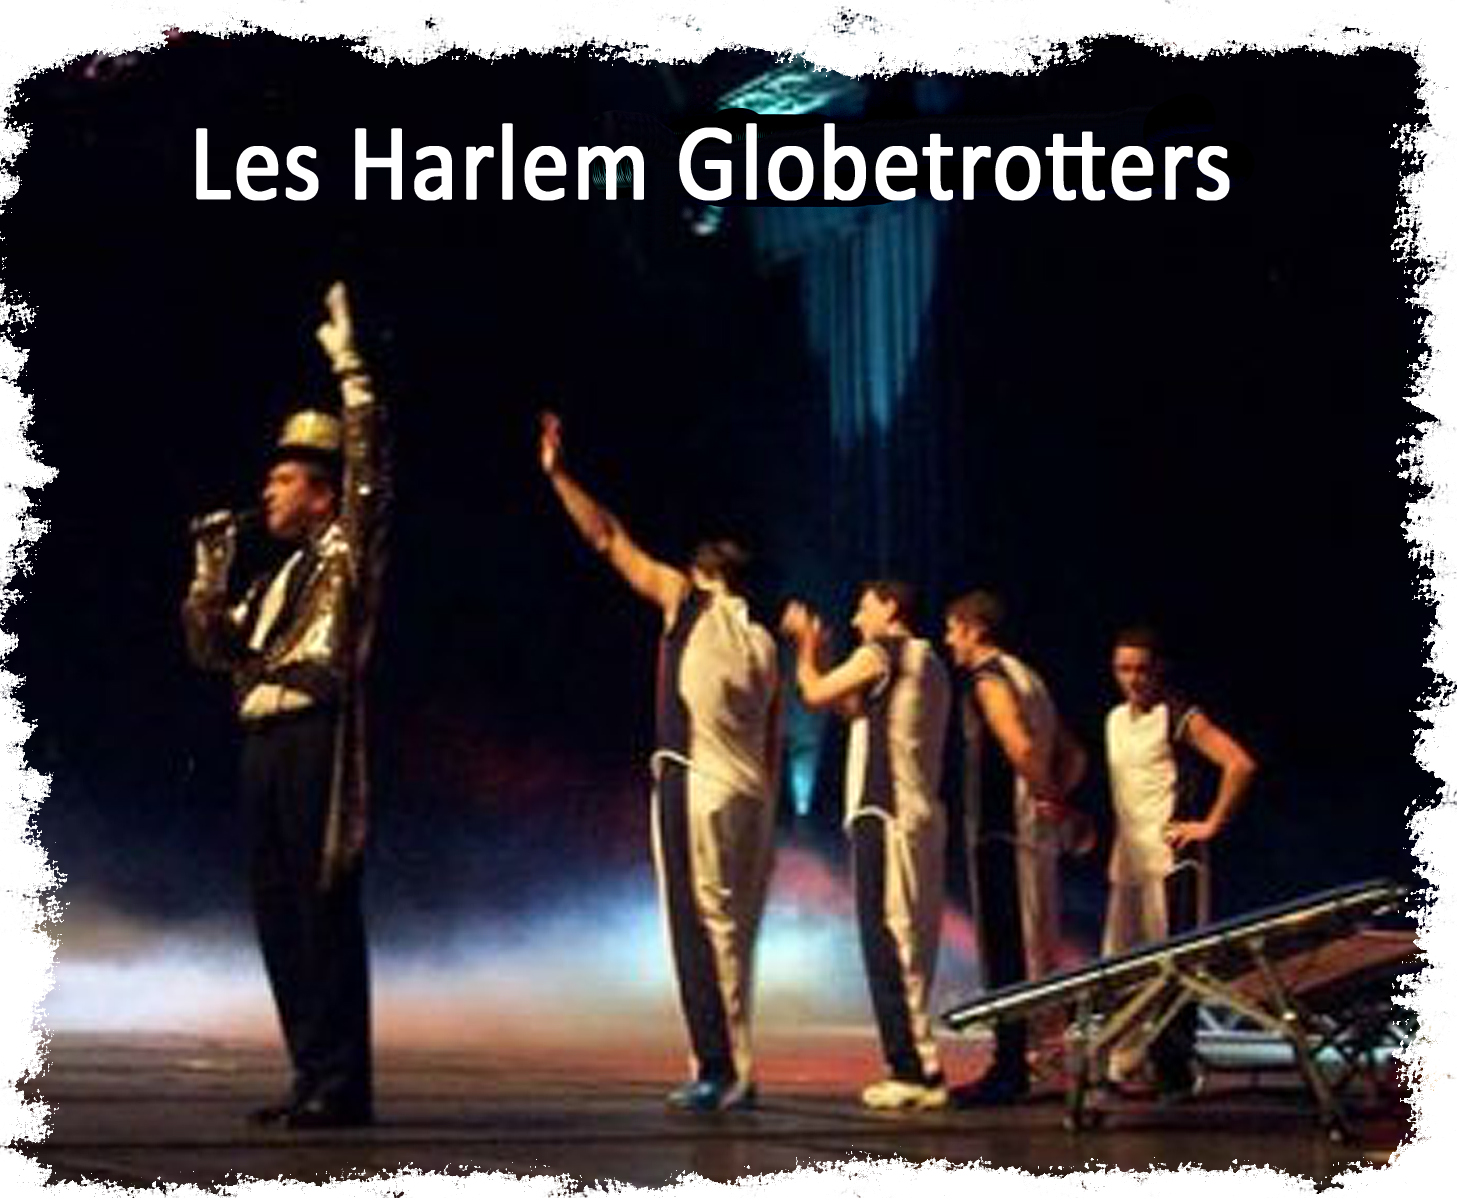 Les Harlem Globetrotters